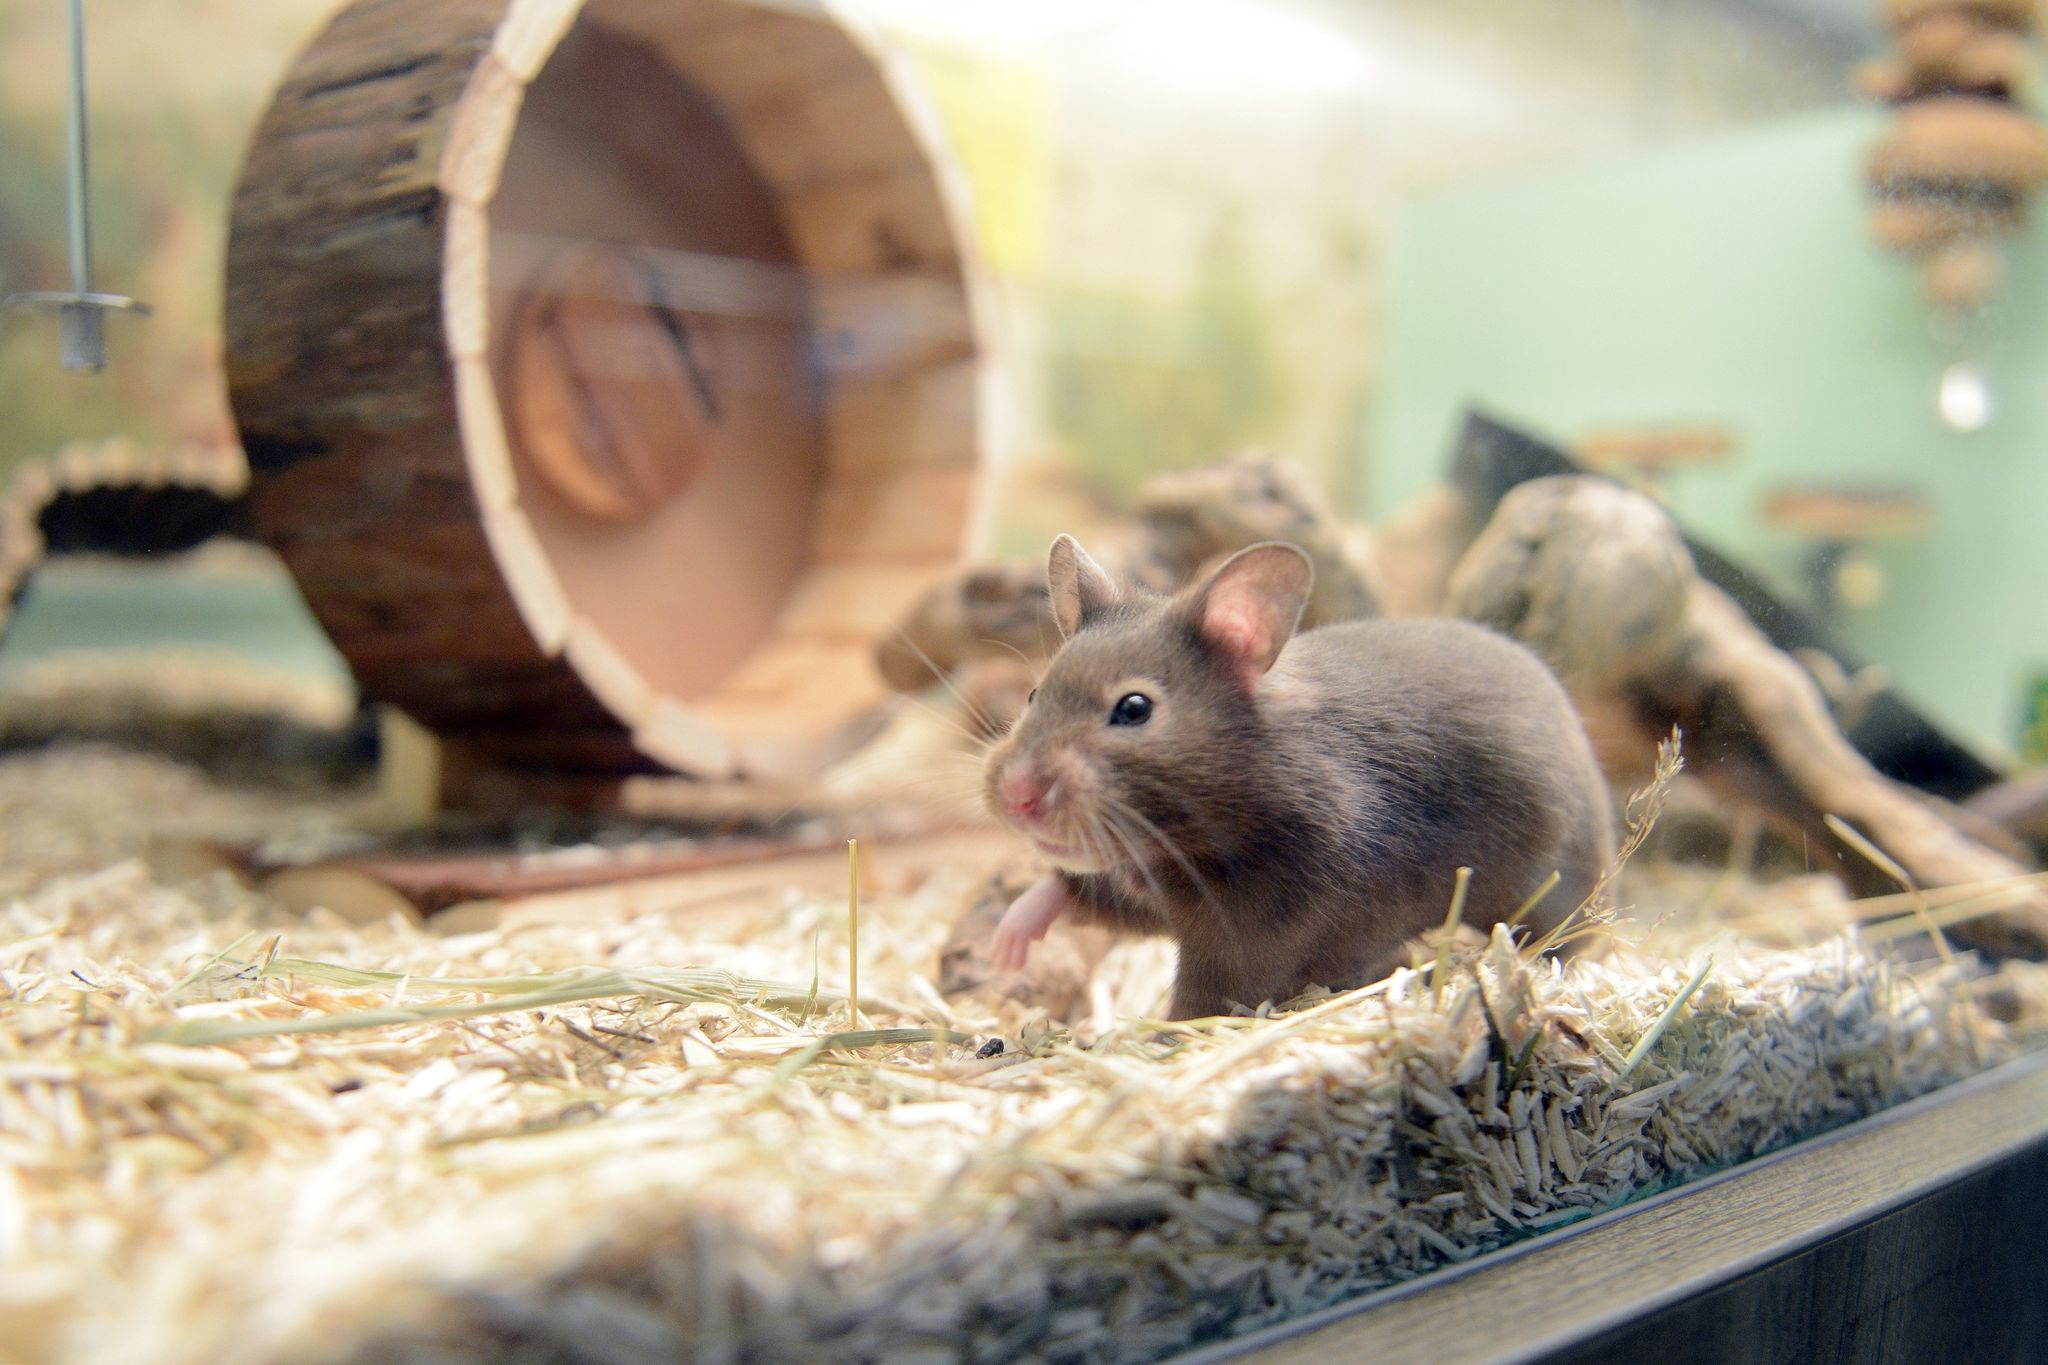 Las autoridades sanitarias europeas aseguraron que los animales con mayor riesgo de convertirse en reservorios del virus son los roedores domésticos
Foto: Caroline Seidel/dpa